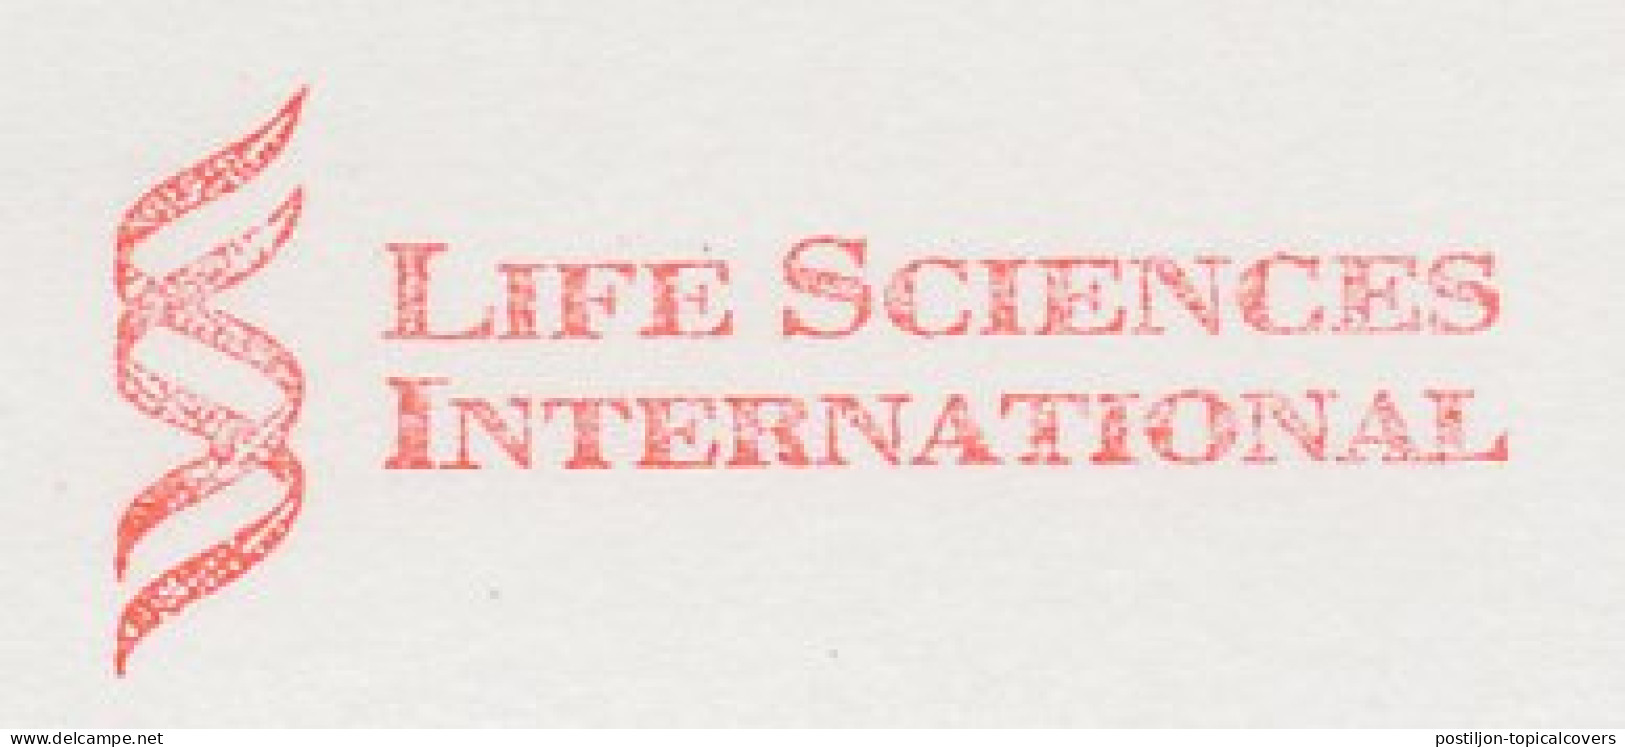 Meter Cut Netherlands 1996 Life Sciences International - DNA - Autres & Non Classés